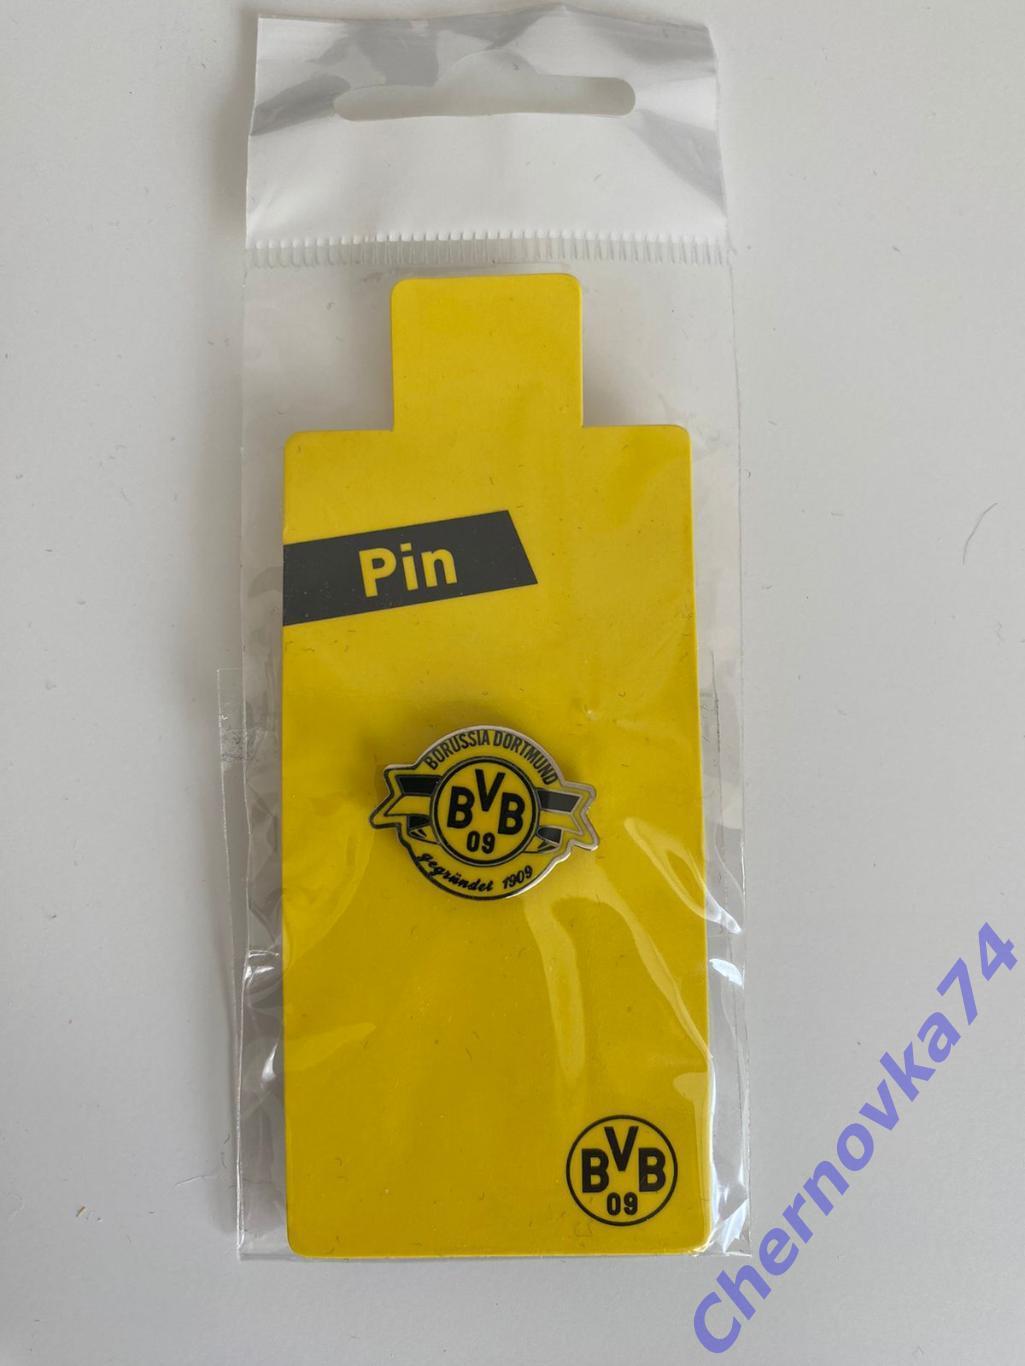 Официальный значок футбольного клуба Боруссия Дортмунд (Borussia Dortmund)